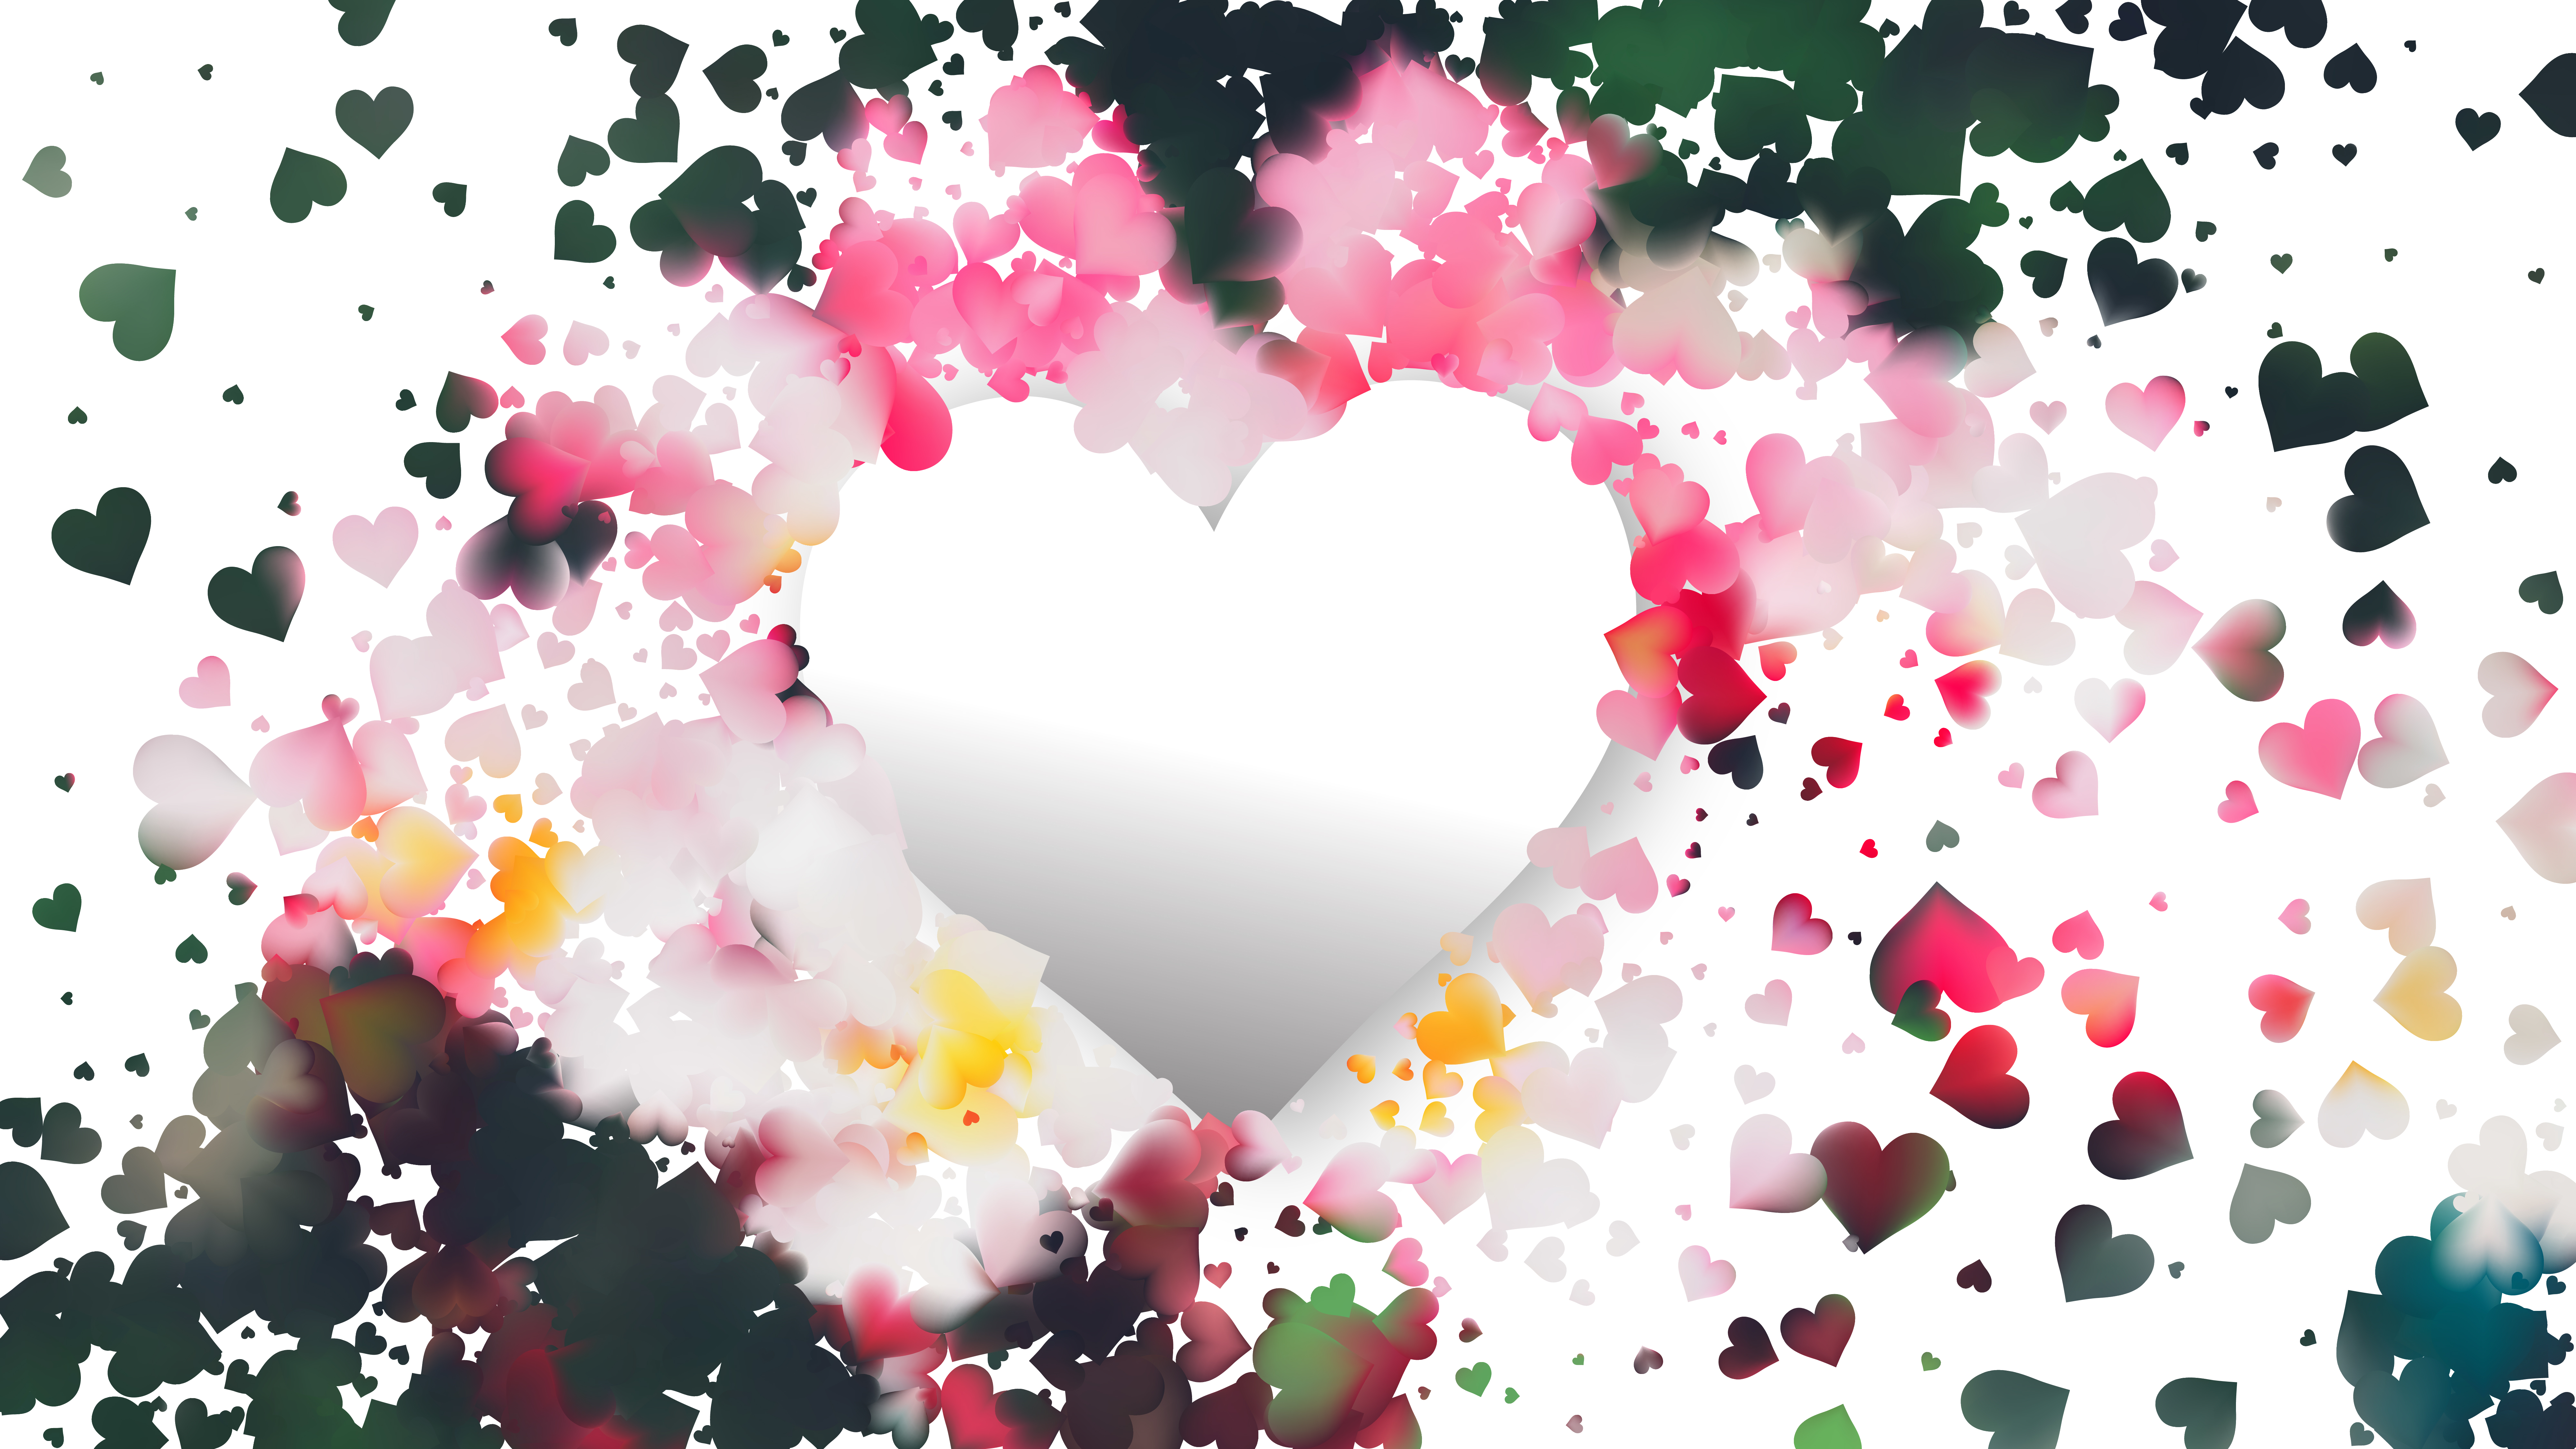 Pink And Green Heart Wallpaper Background Vector Art - Heart - HD Wallpaper 